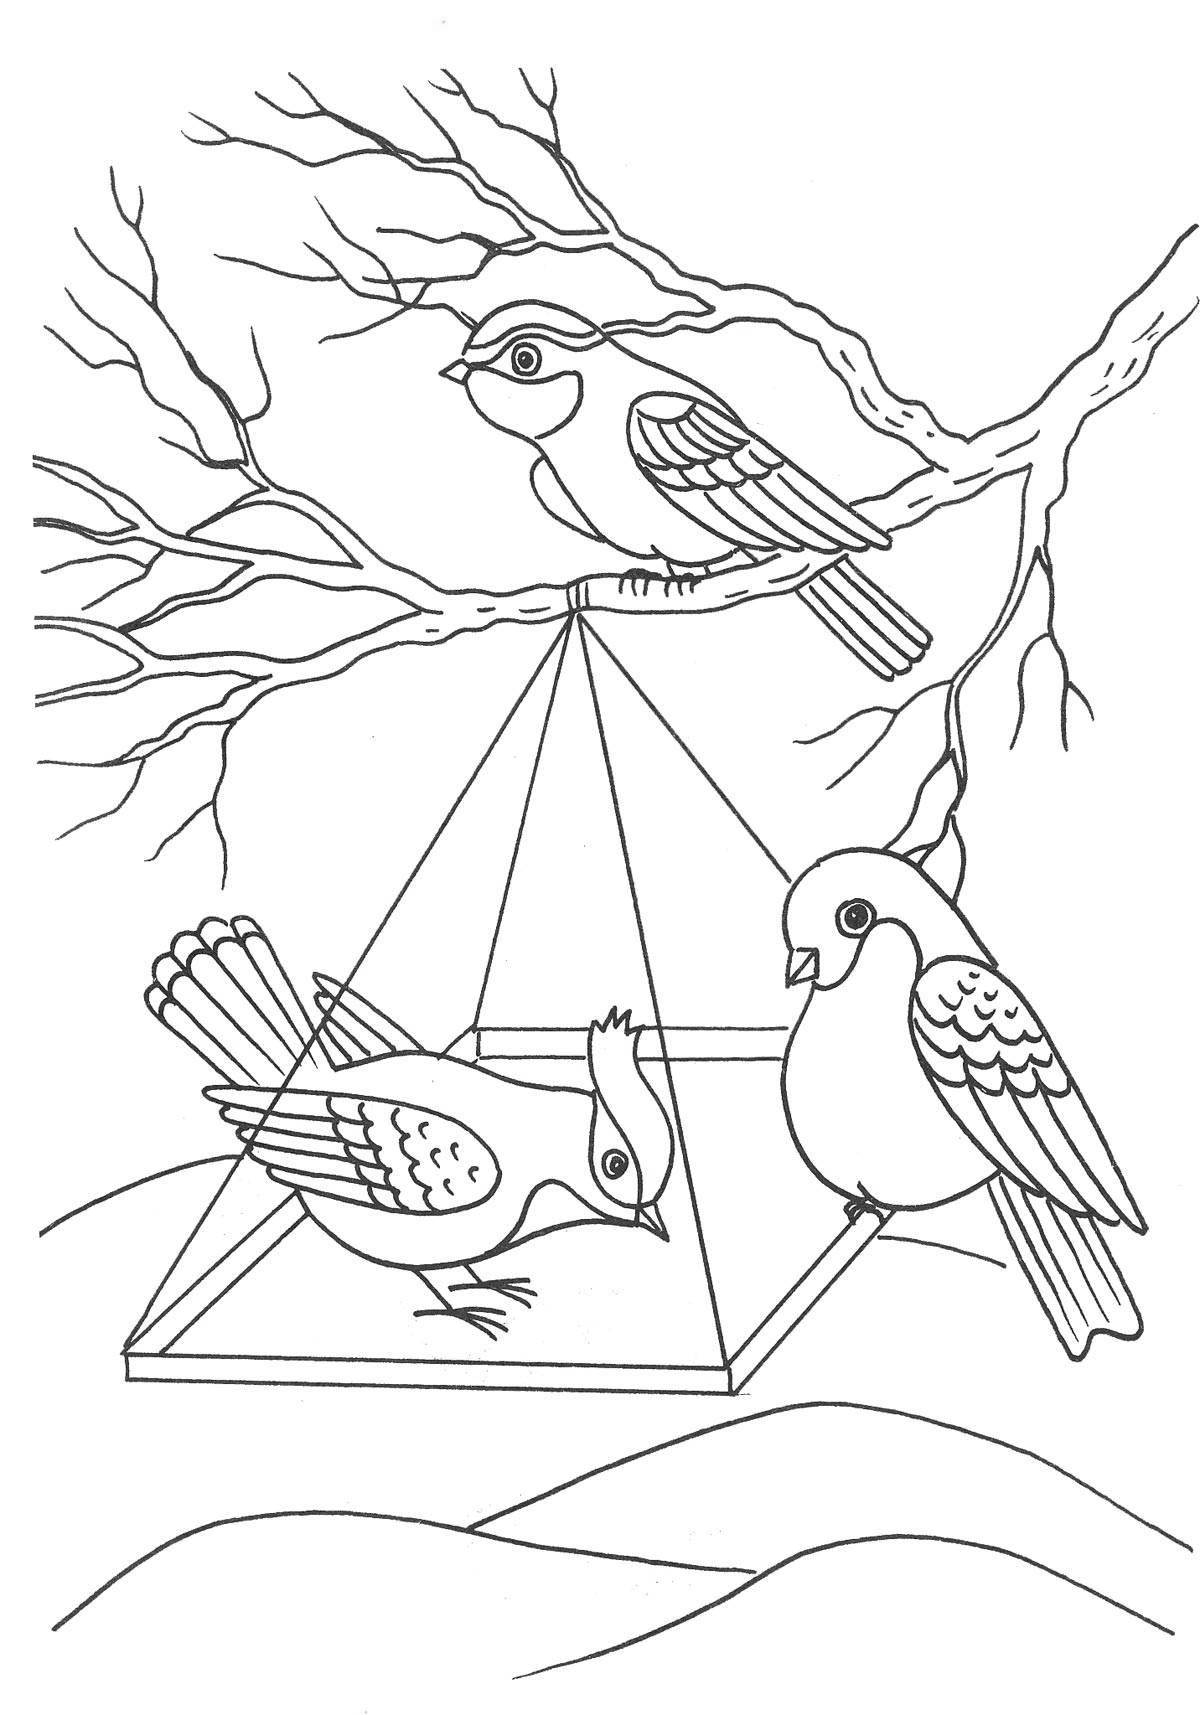 Adorable Wintering Sparrow Coloring Page